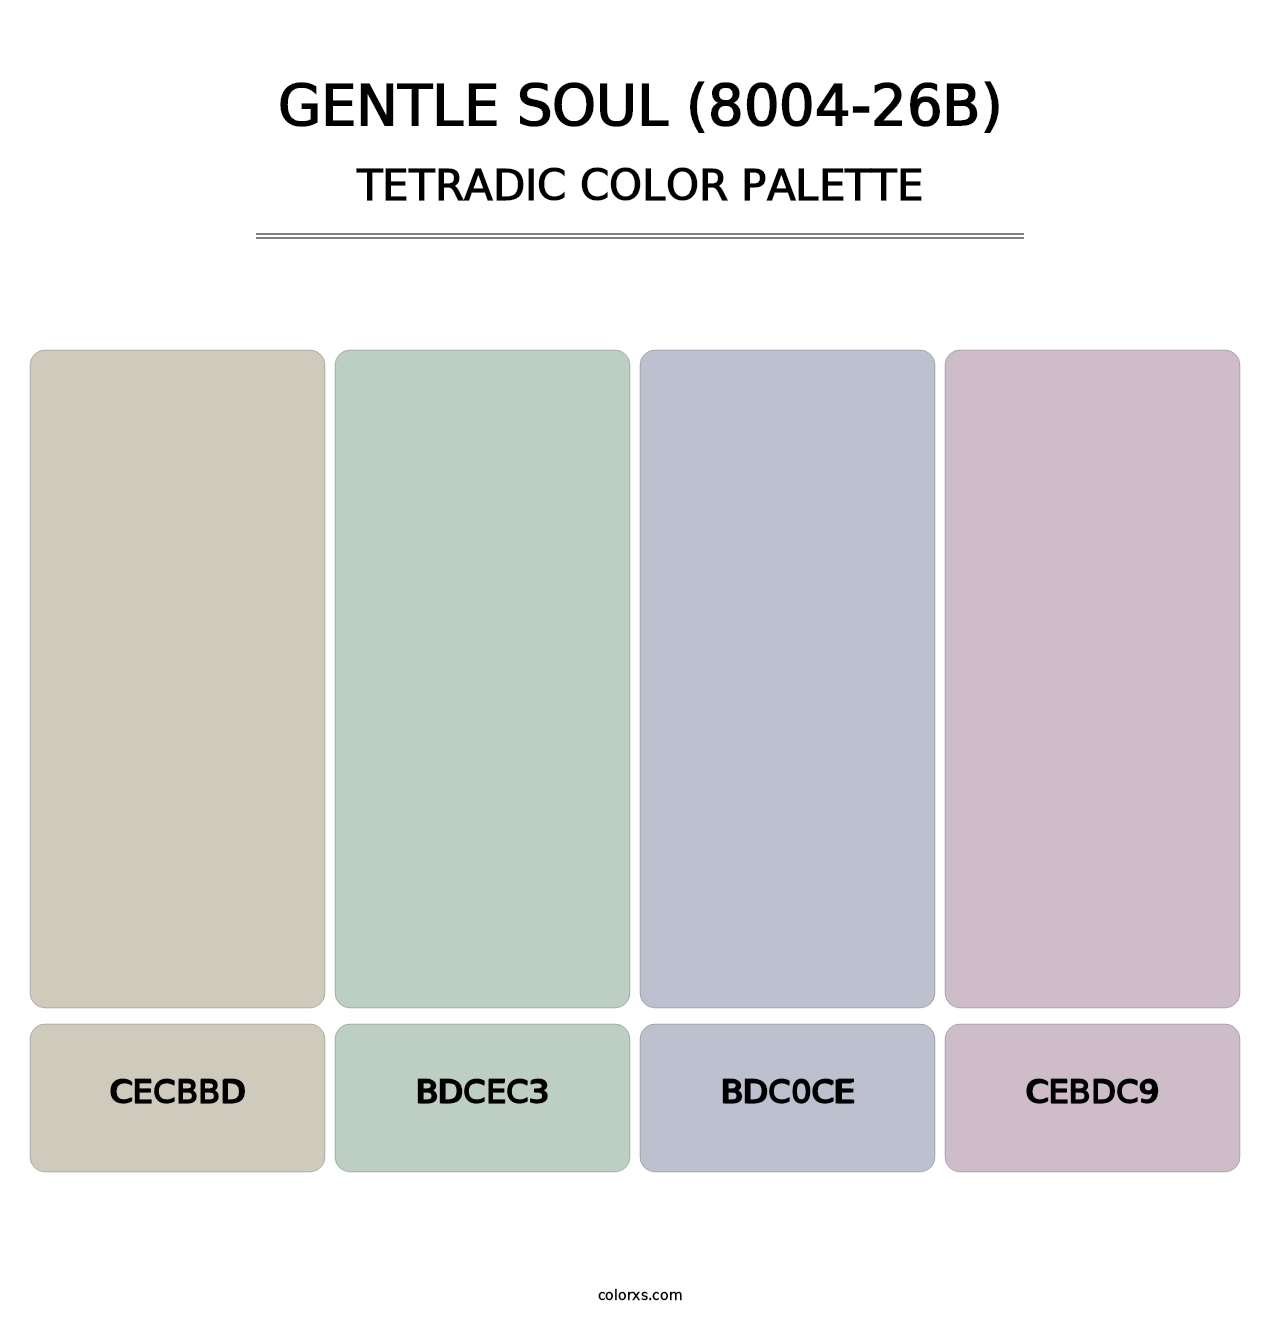 Gentle Soul (8004-26B) - Tetradic Color Palette